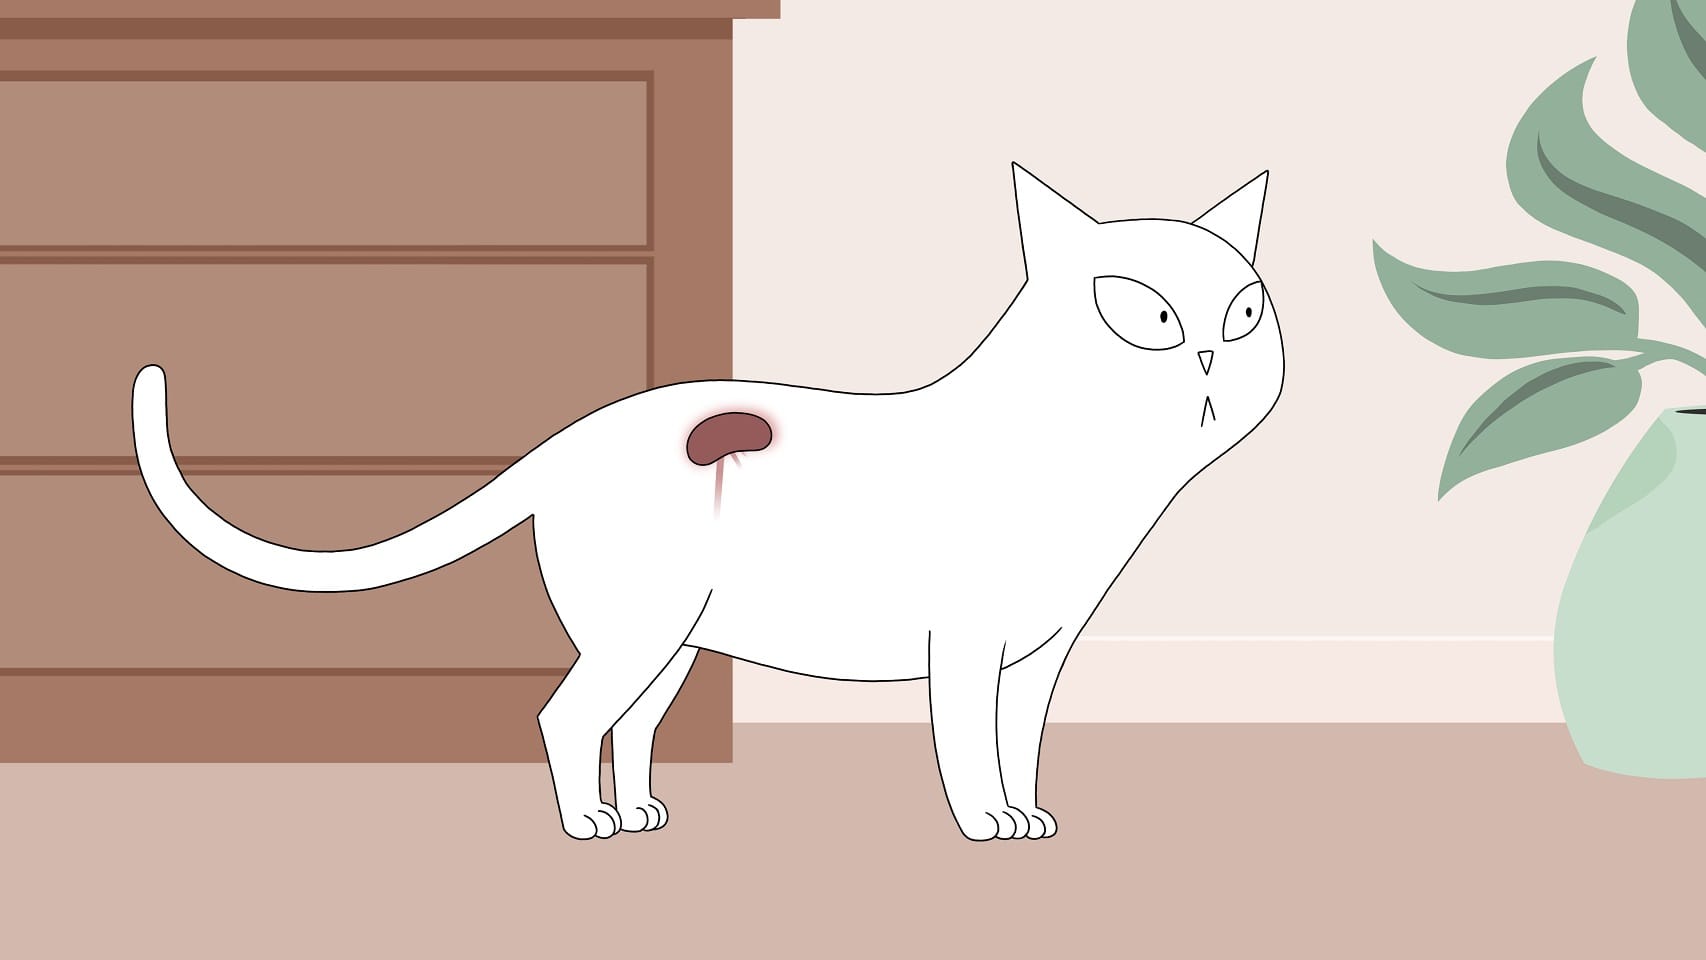 Magas vérnyomással összefüggő krónikus vesebetegségben szenvedő macska